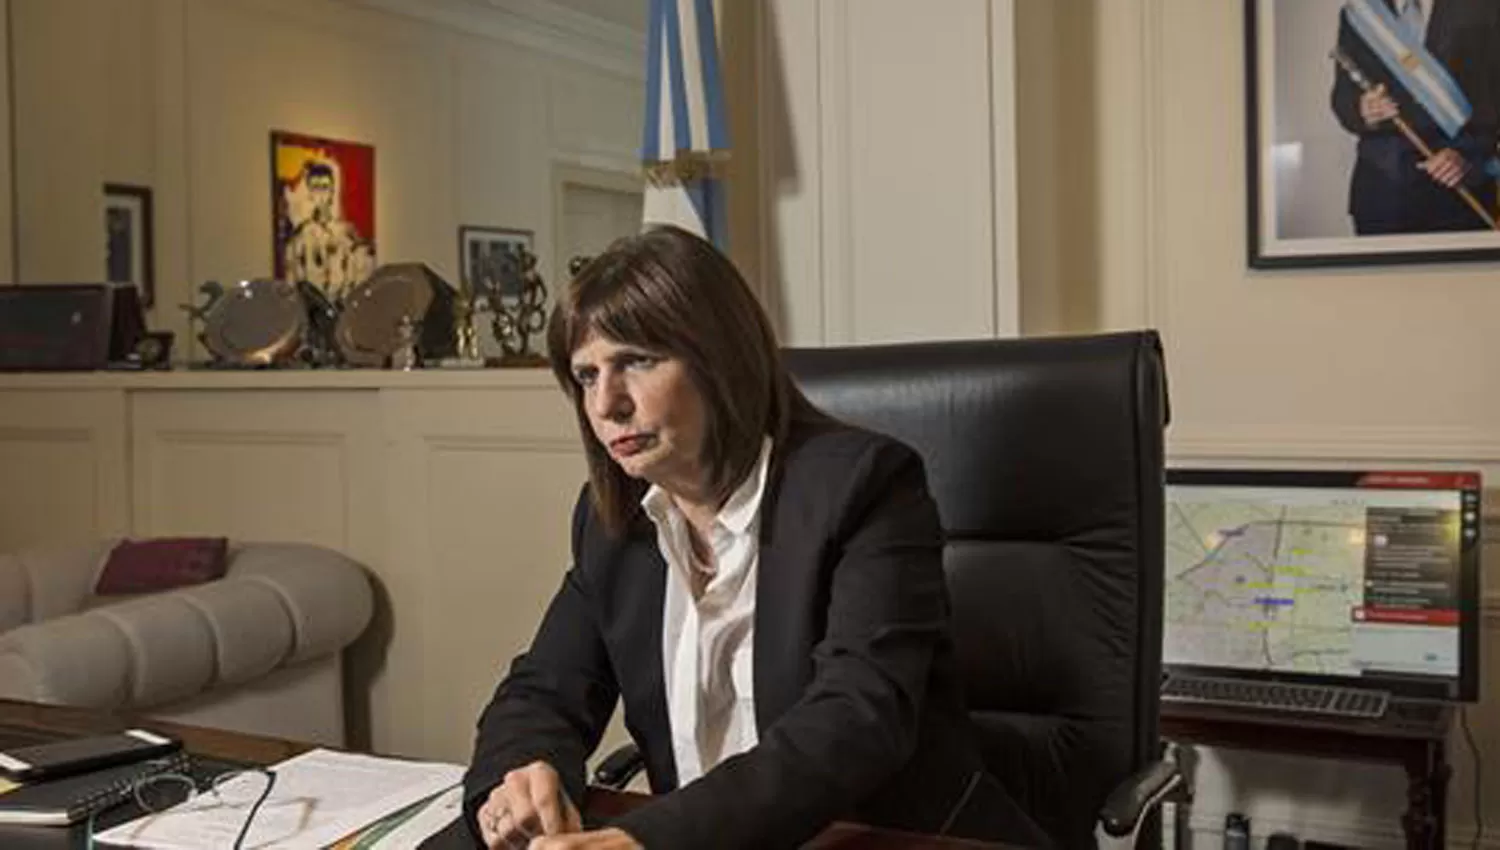 PATRICIA BULLRICH. Ministra de Seguridad de la Nación. FOTO TOMADA DE LA NACIÓN